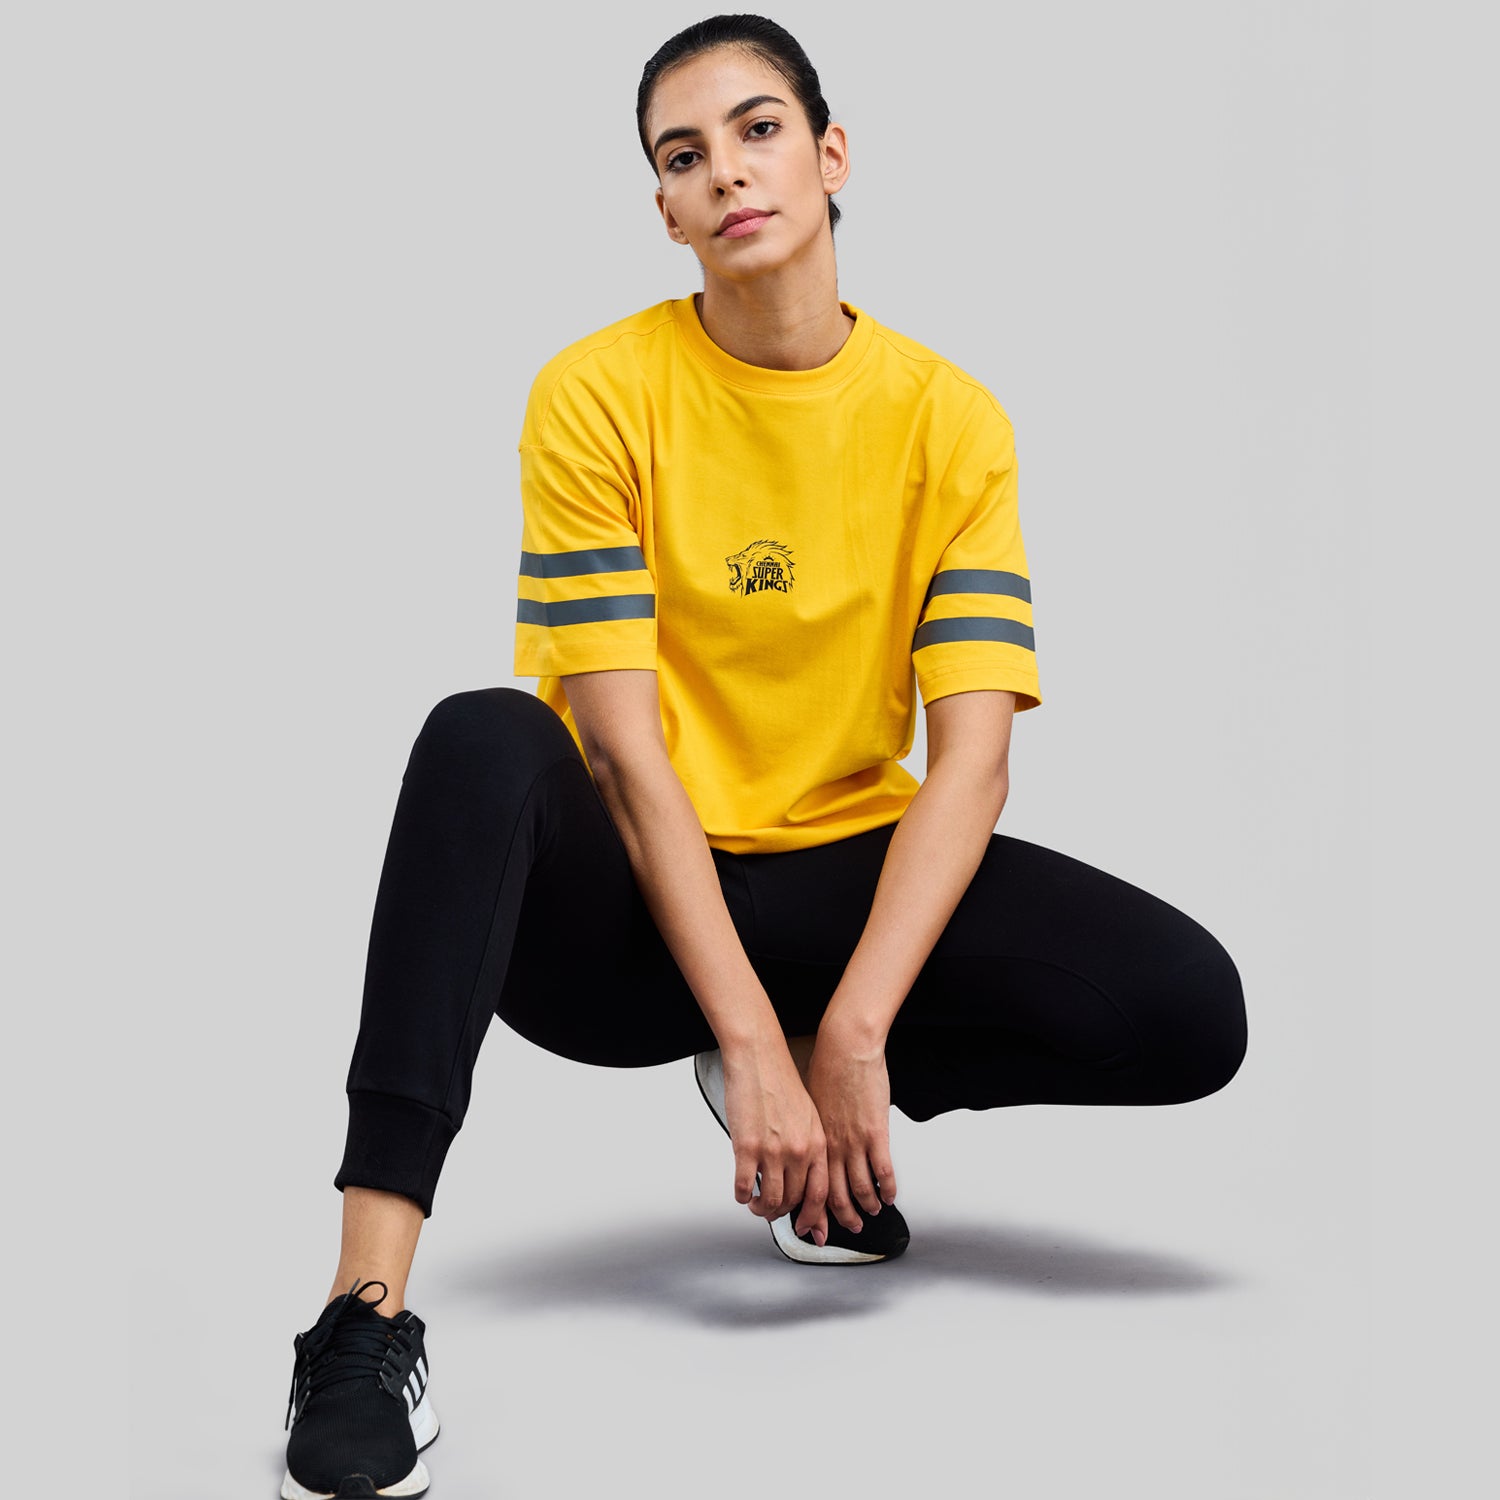 Official CSK Merch - Yellow Thala Women's Oversized T-Shirt